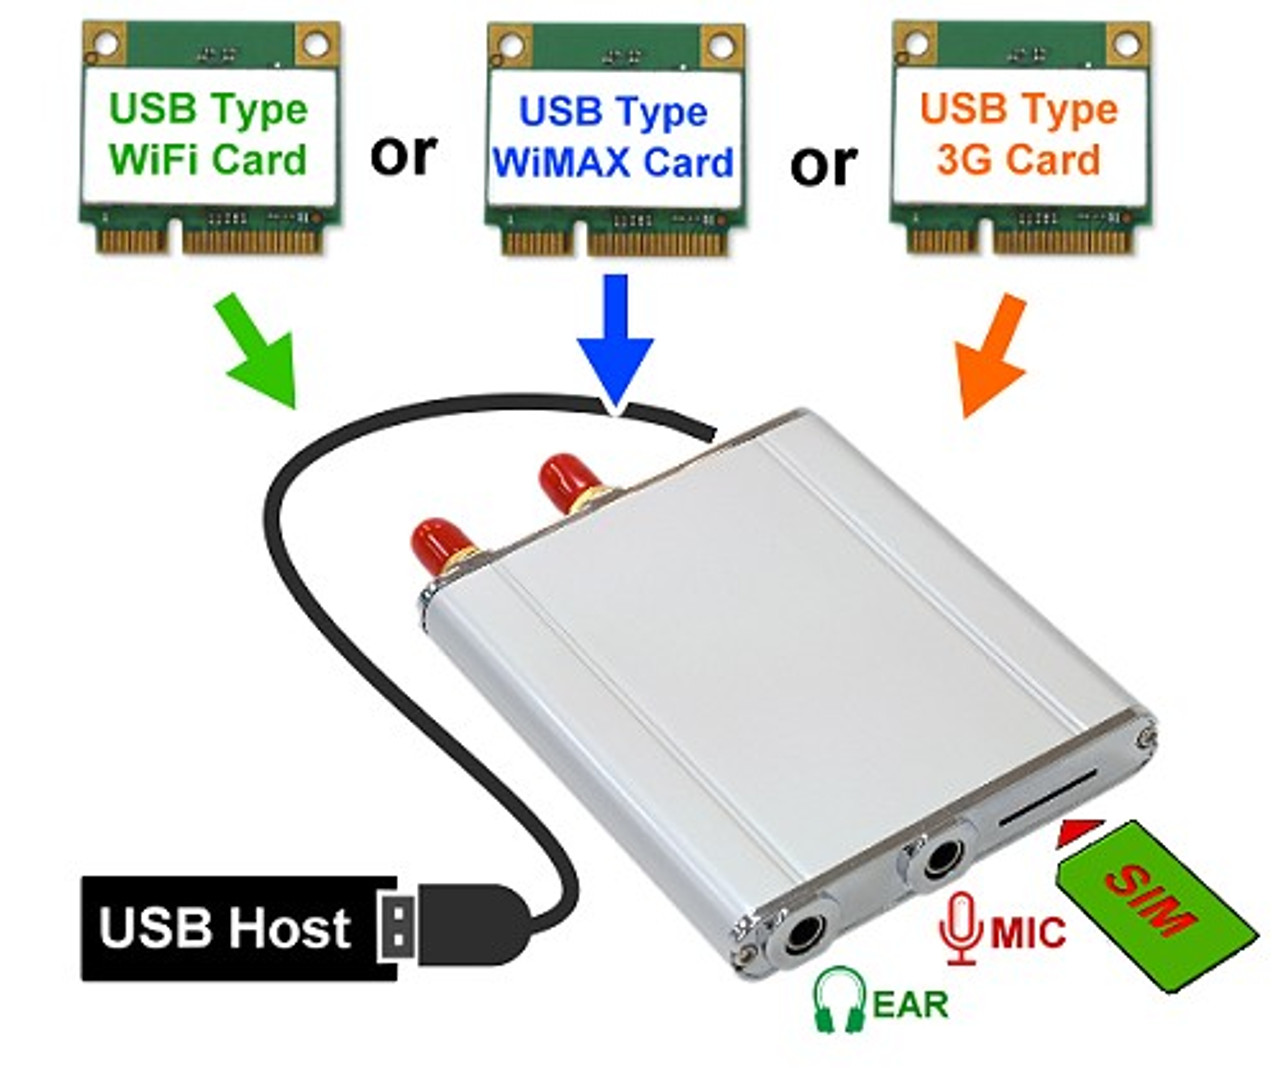 Usbms D Wireless Usb Mini Card Adapter Ver1 2 M Factors Storage